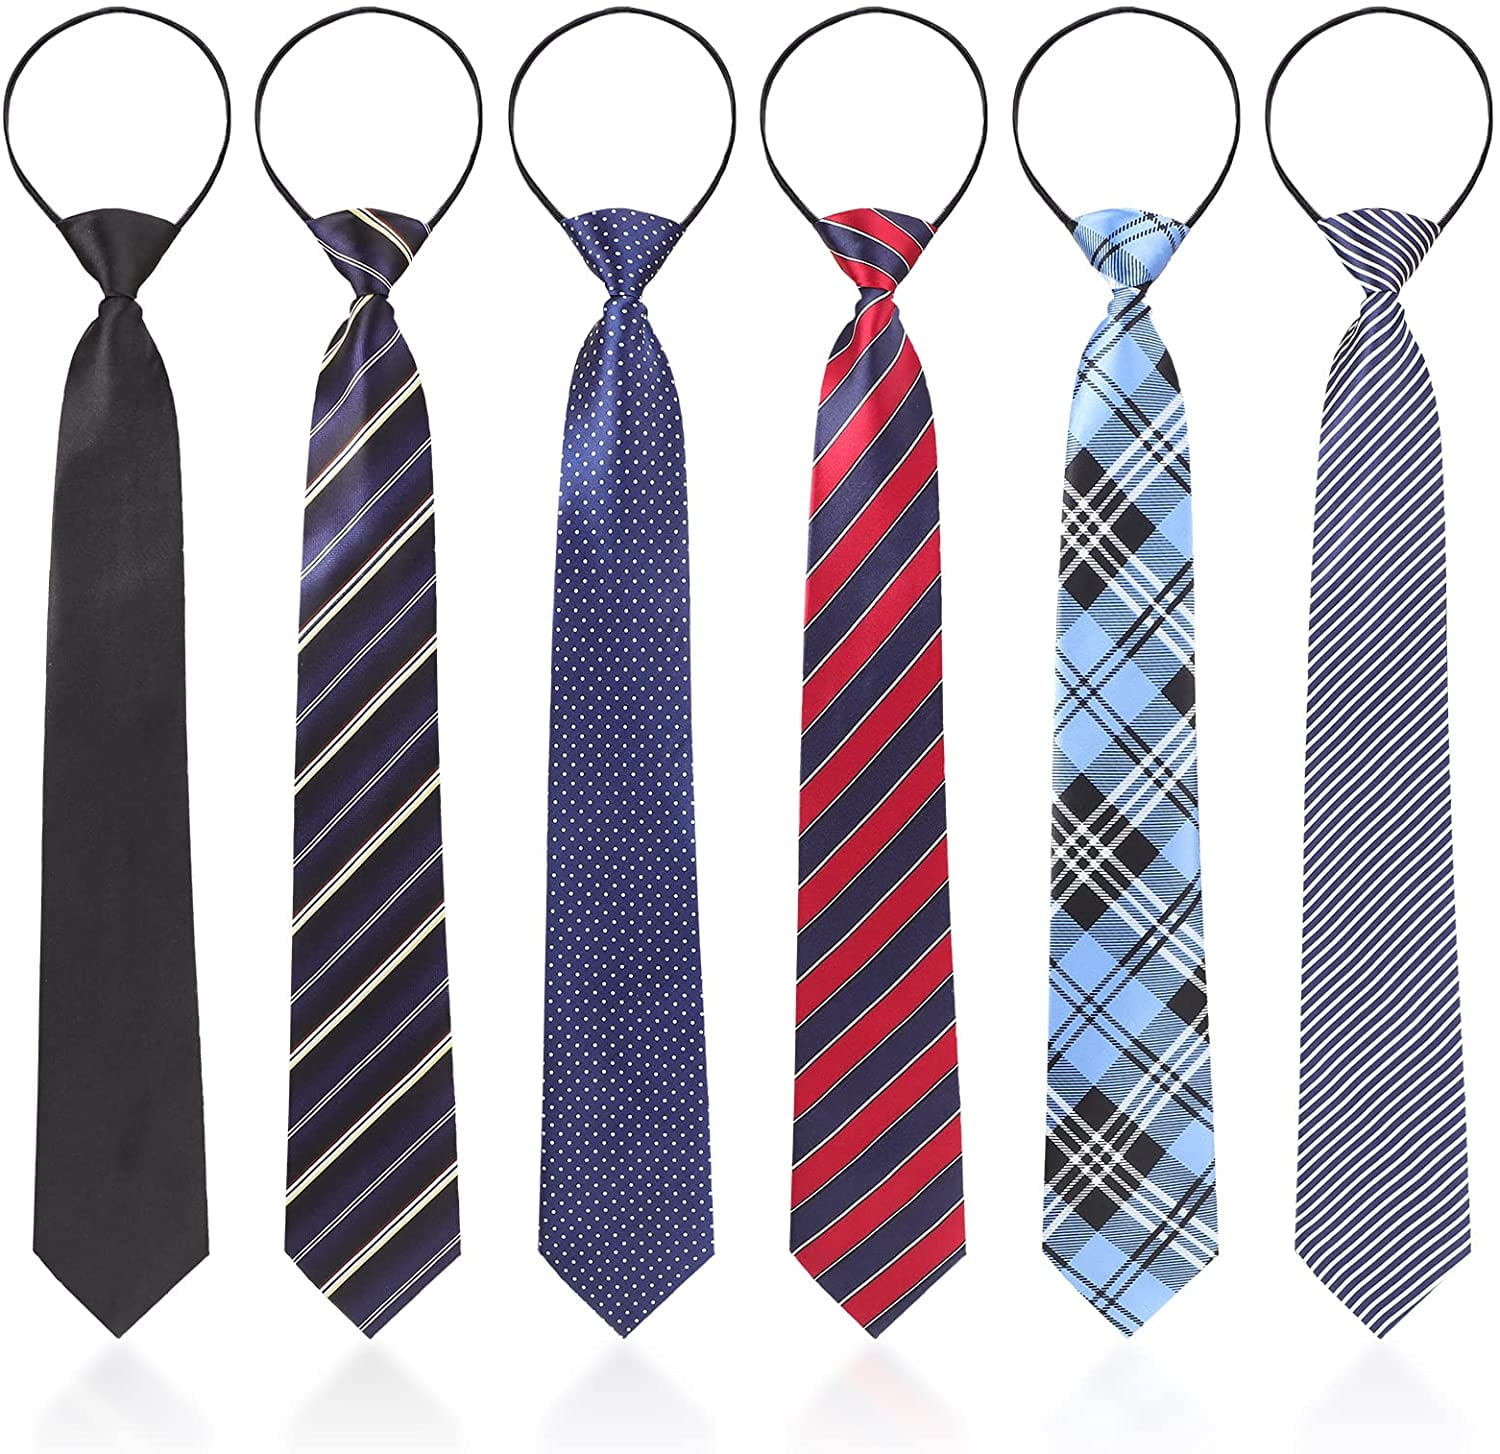 Boys Necktie Tie Pre-tied for Kids Graduation School Uniforms 